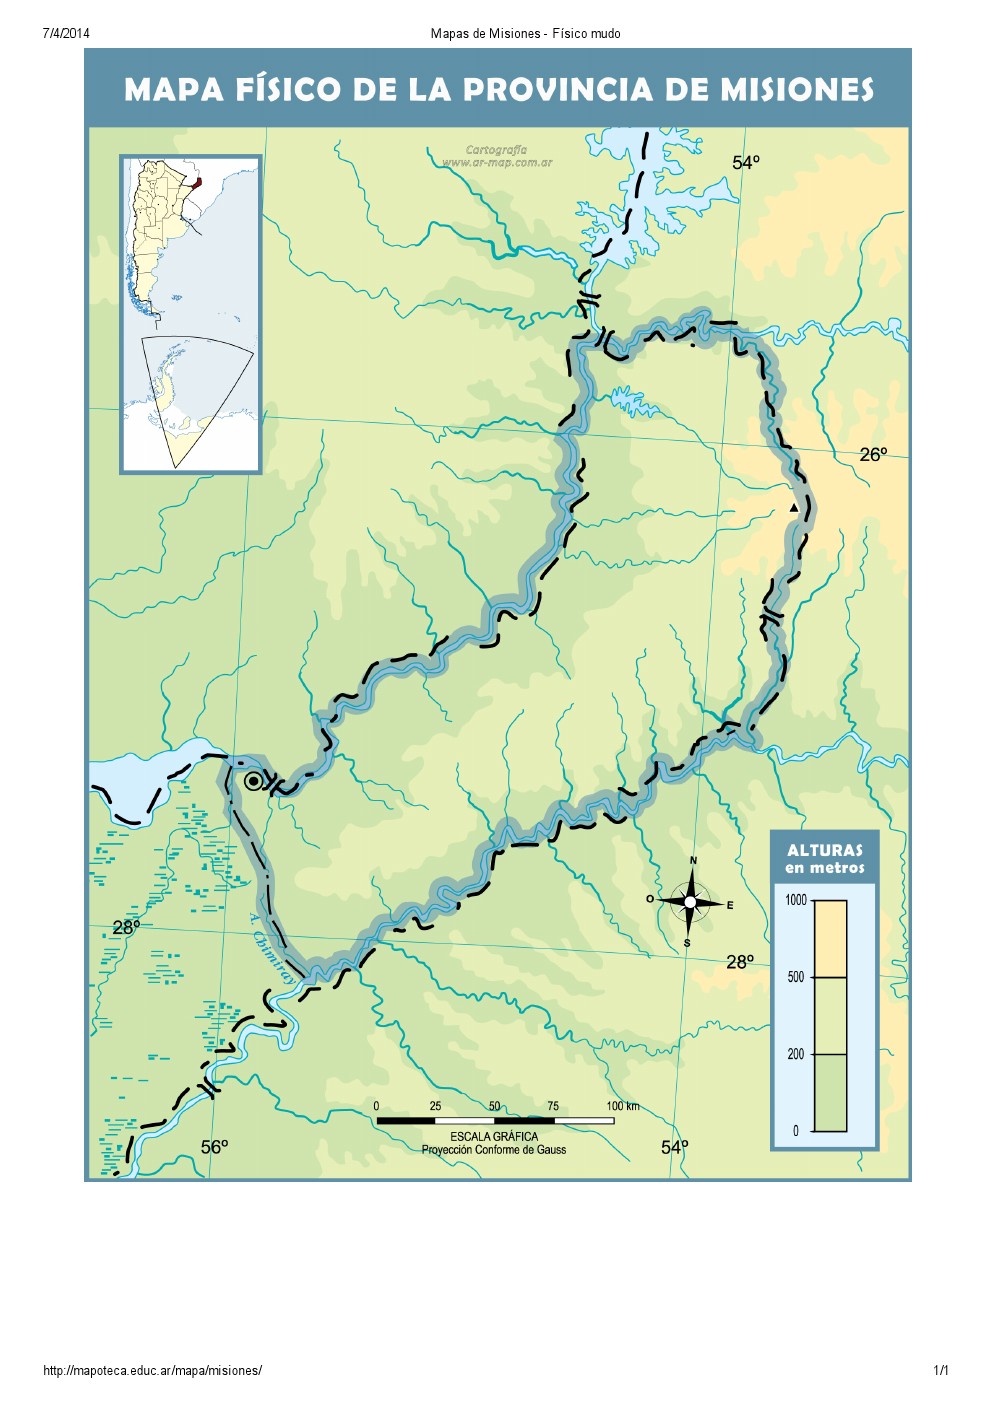 Mapa mudo de ríos de Misiones. Mapoteca de Educ.ar